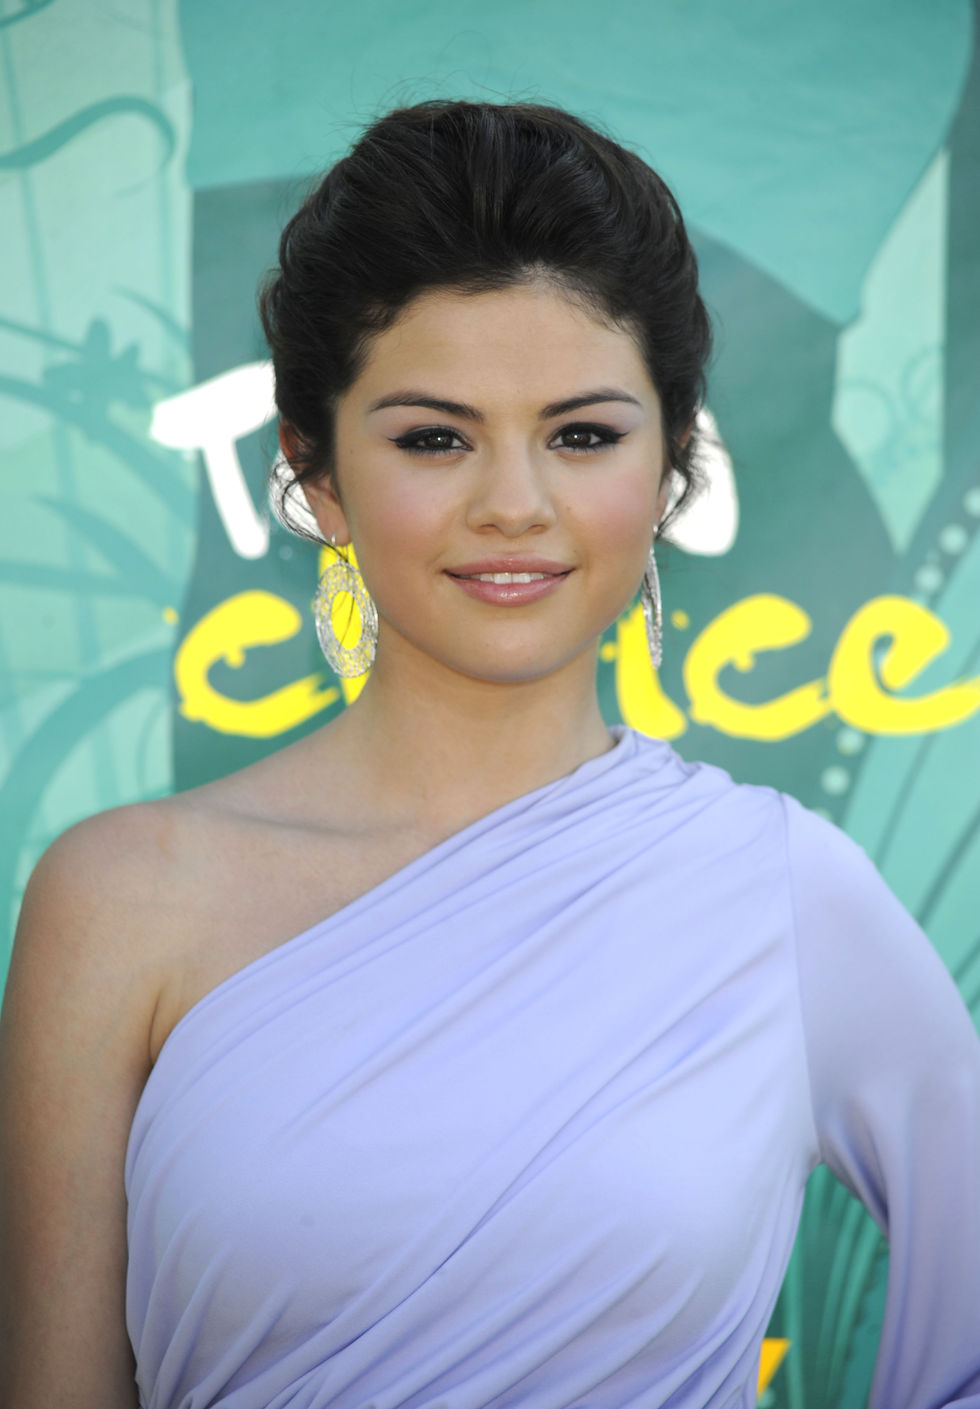 Pics of Selena Gomez 2009